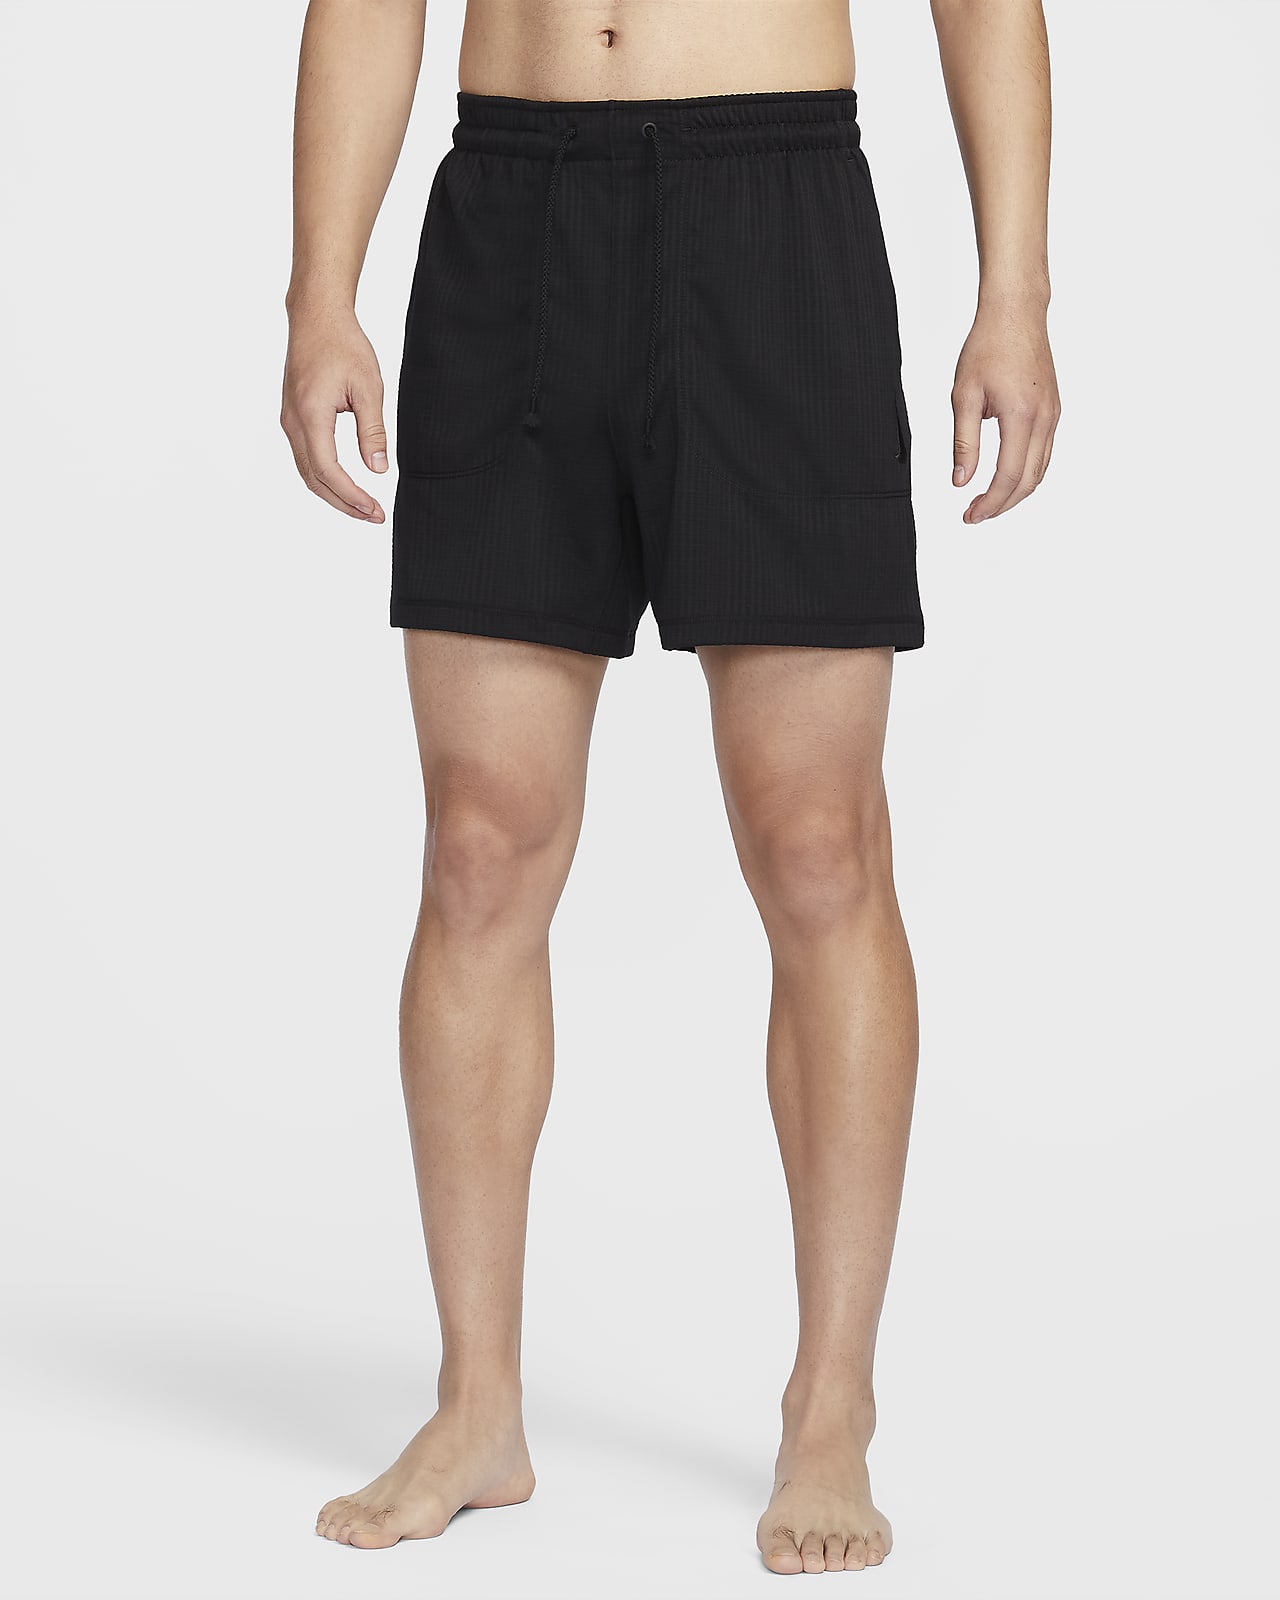 Nike, Yoga Dri-FIT Men's Shorts